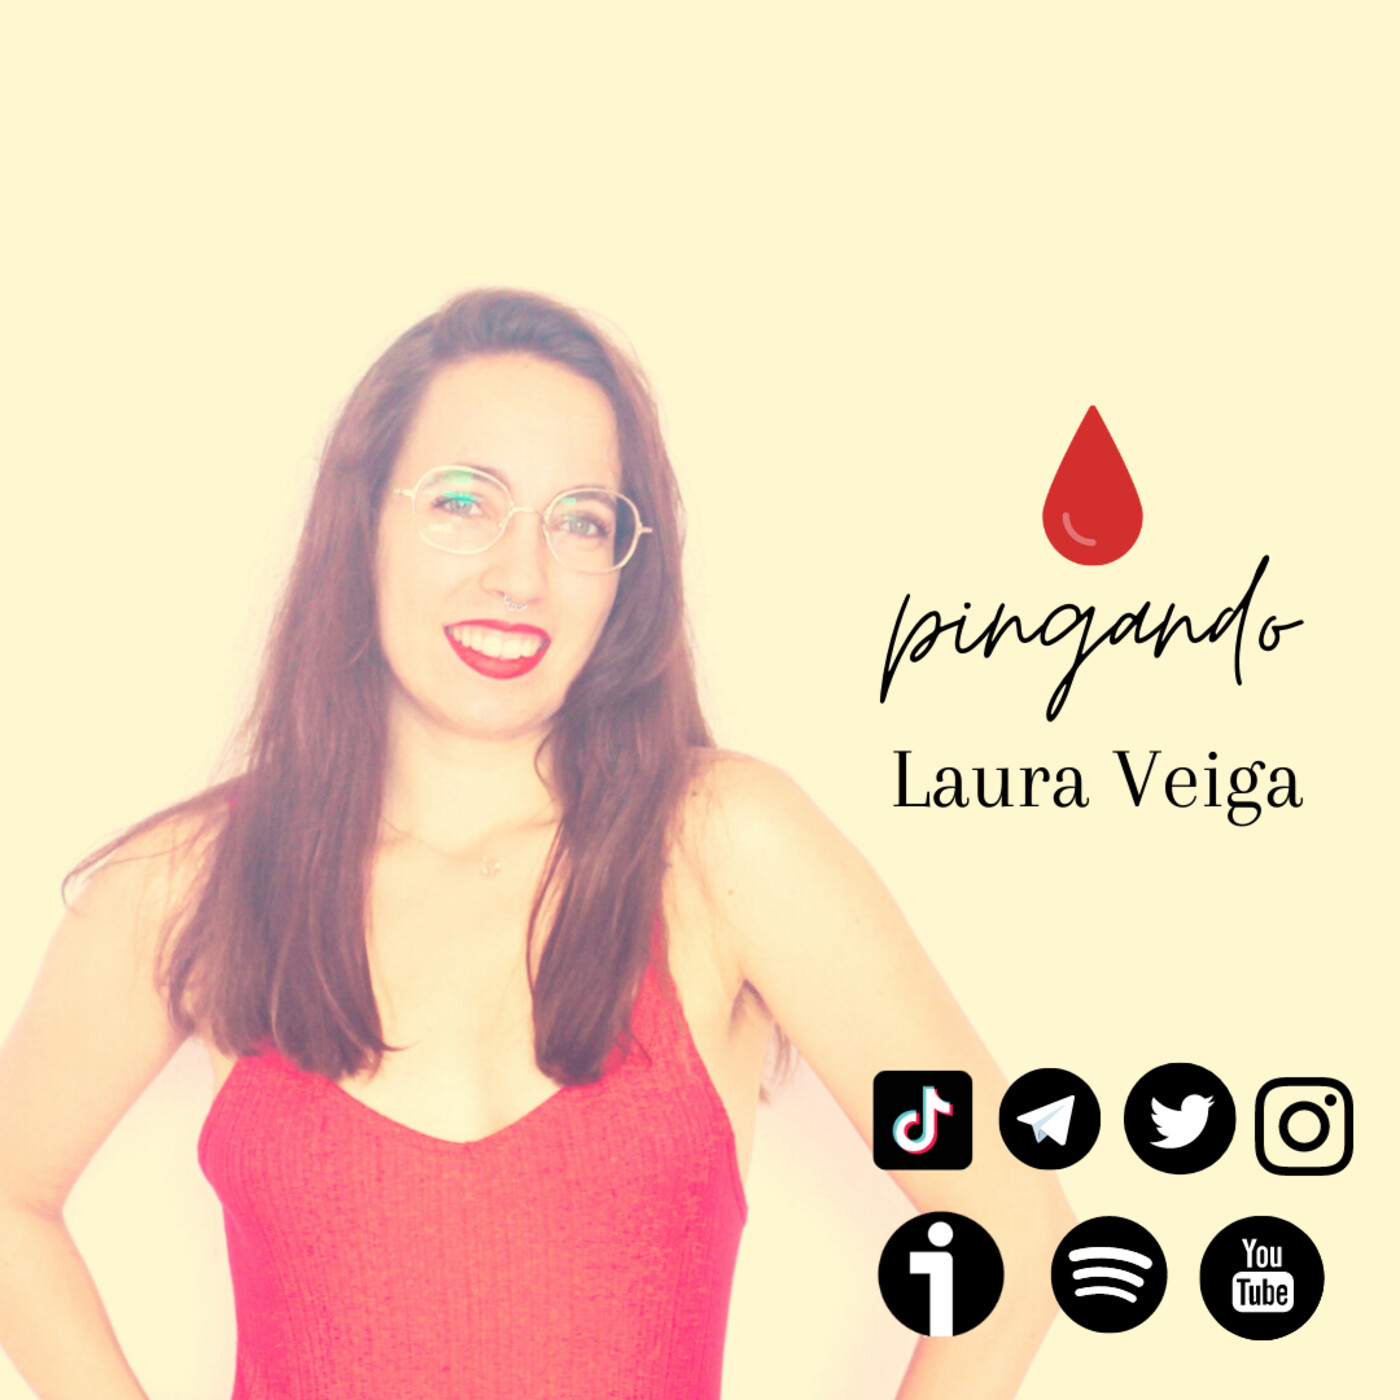 Pingando – Laura Veiga